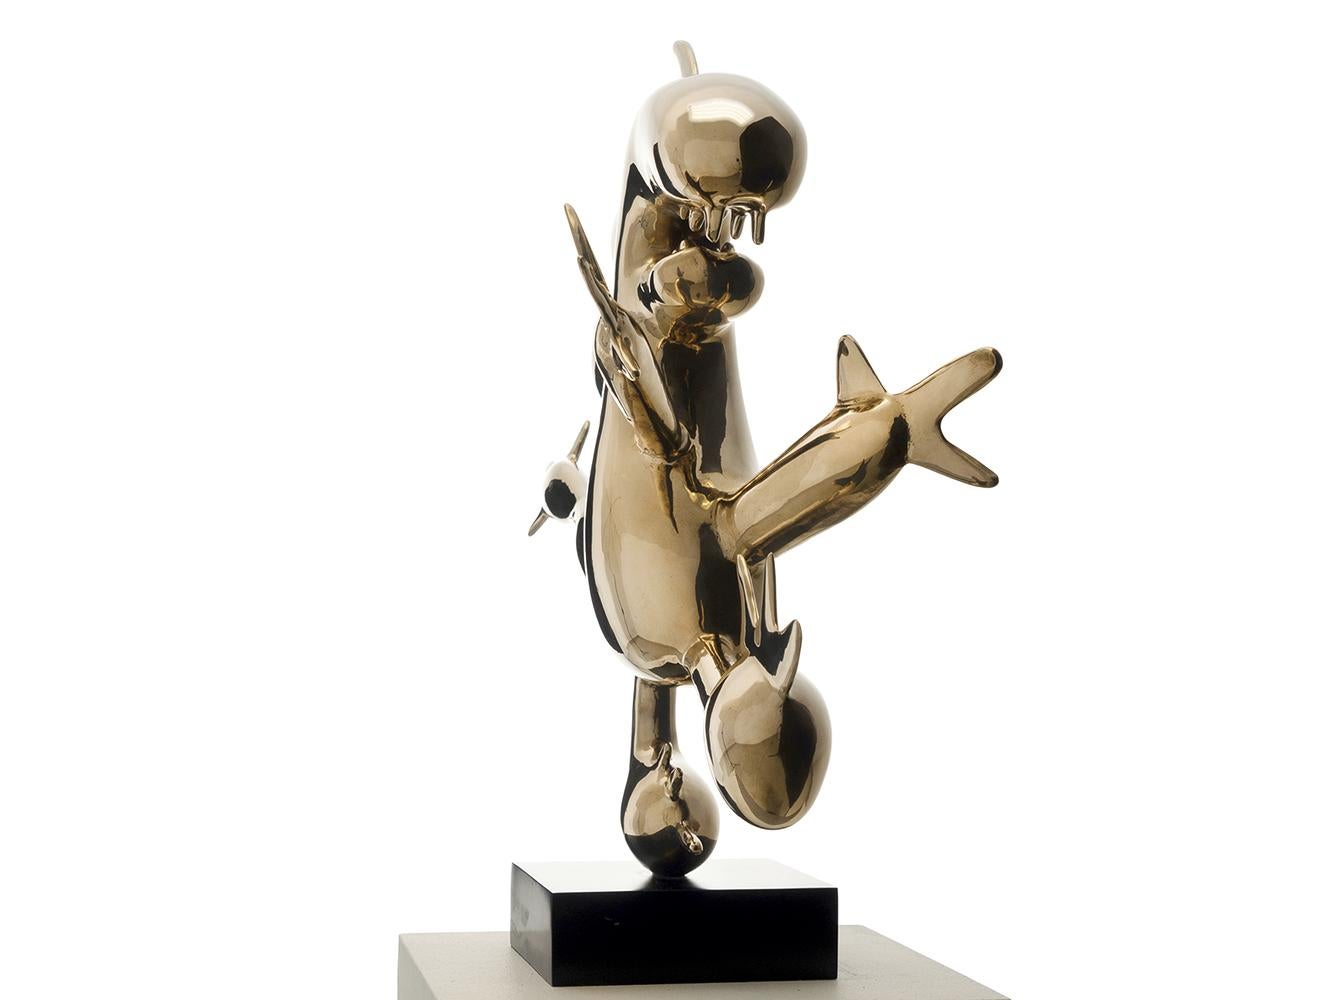 Menschenfresser by Marcelo Martin Burgos - polished bronze sculpture, golden 2